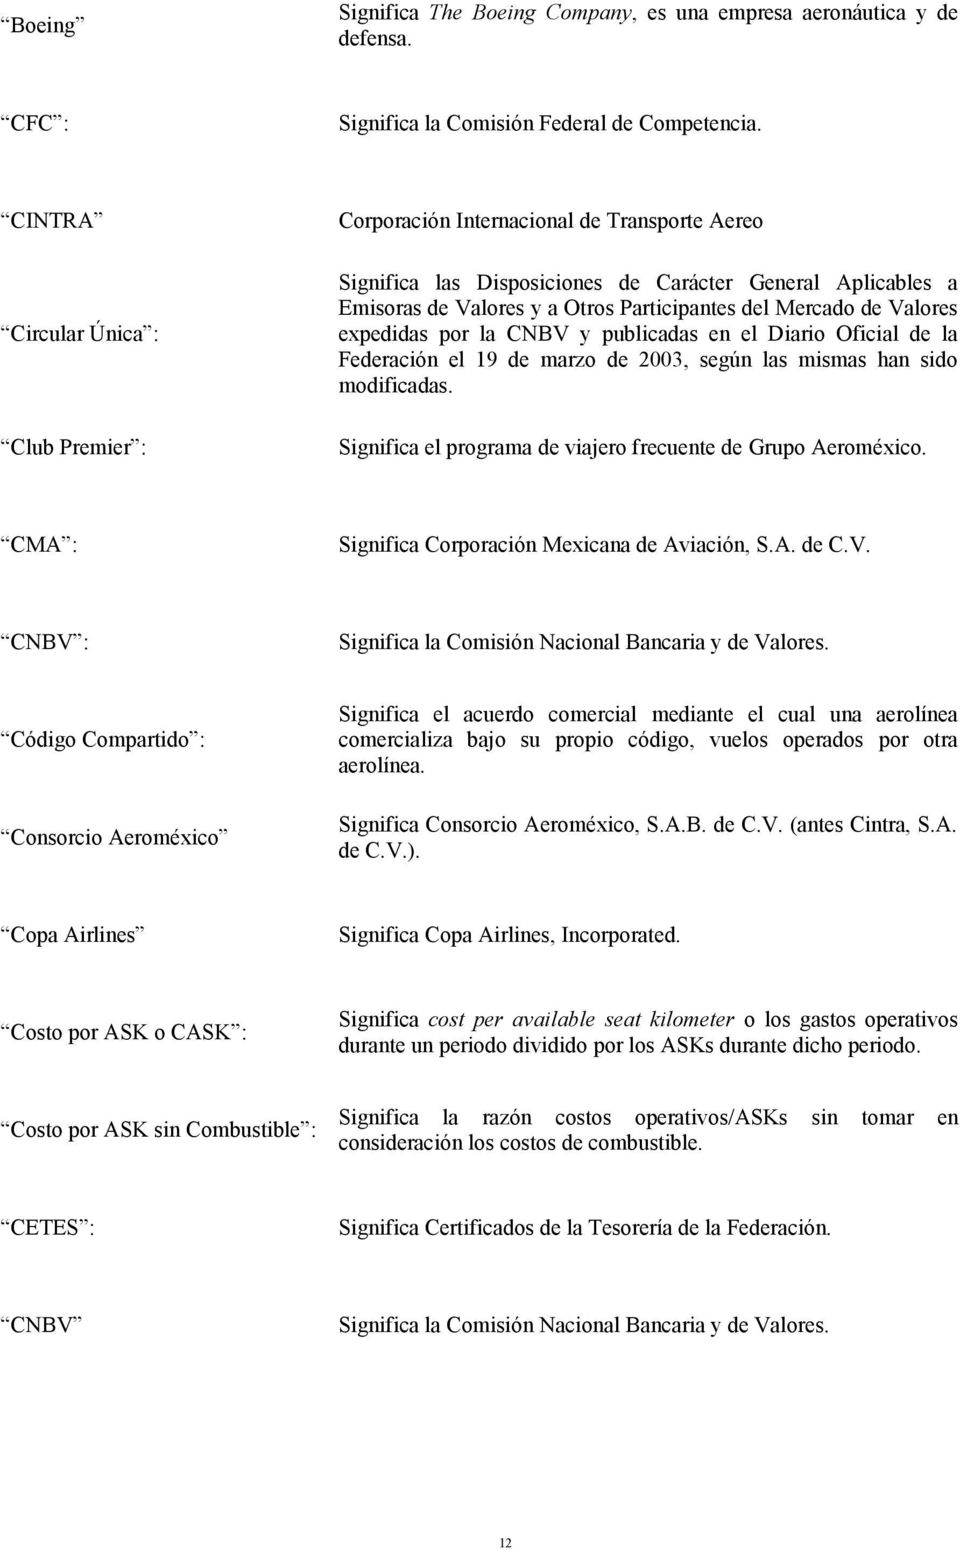 Mercado de Valores expedidas por la CNBV y publicadas en el Diario Oficial de la Federación el 19 de marzo de 2003, según las mismas han sido modificadas.